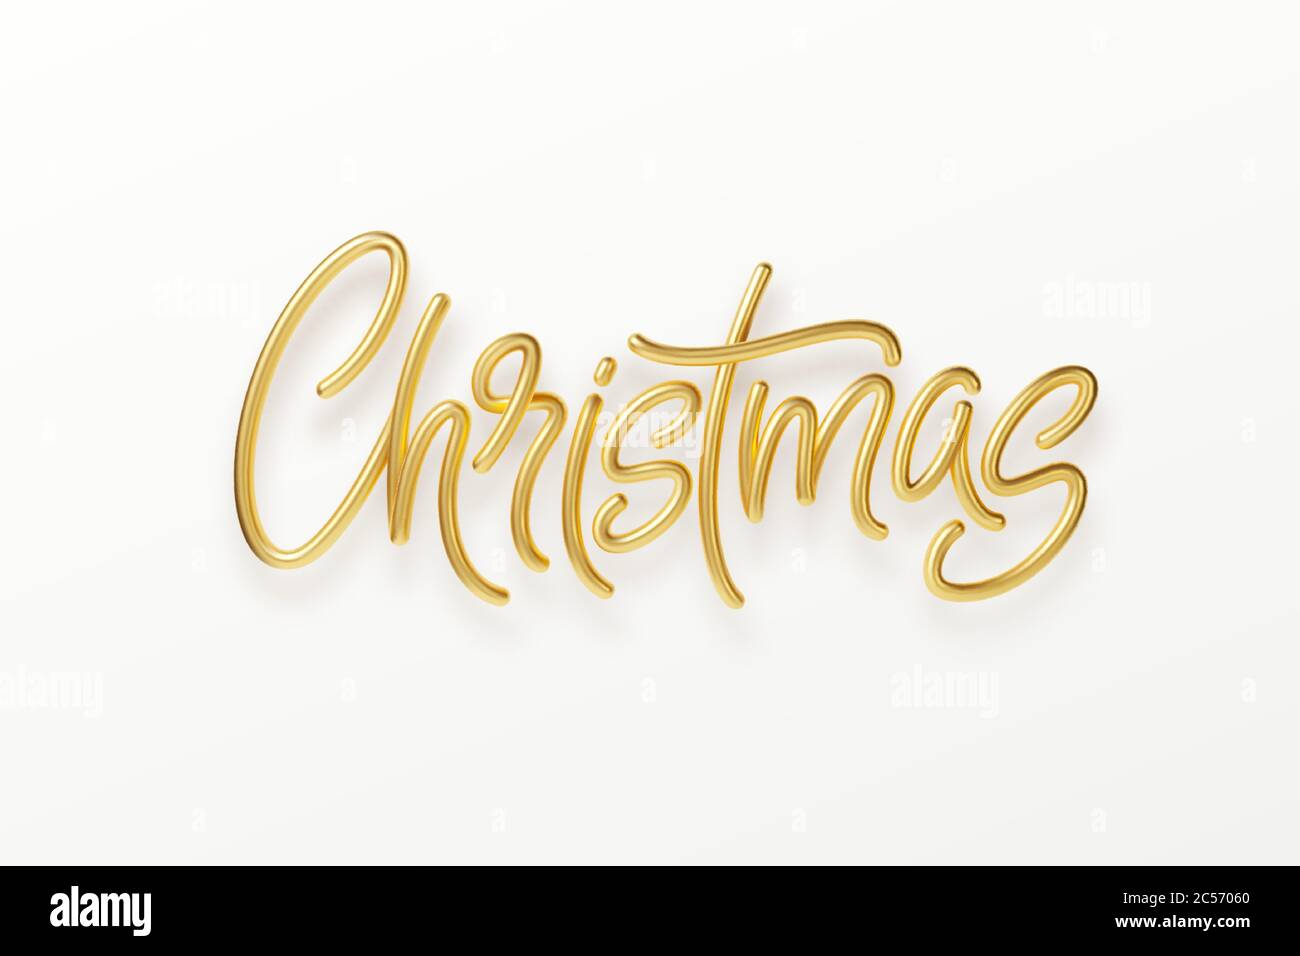 Realistische 3d Inschrift Frohe Weihnachten isoliert auf. Goldglänzender Schriftzug. Vektorgrafik Stock Vektor